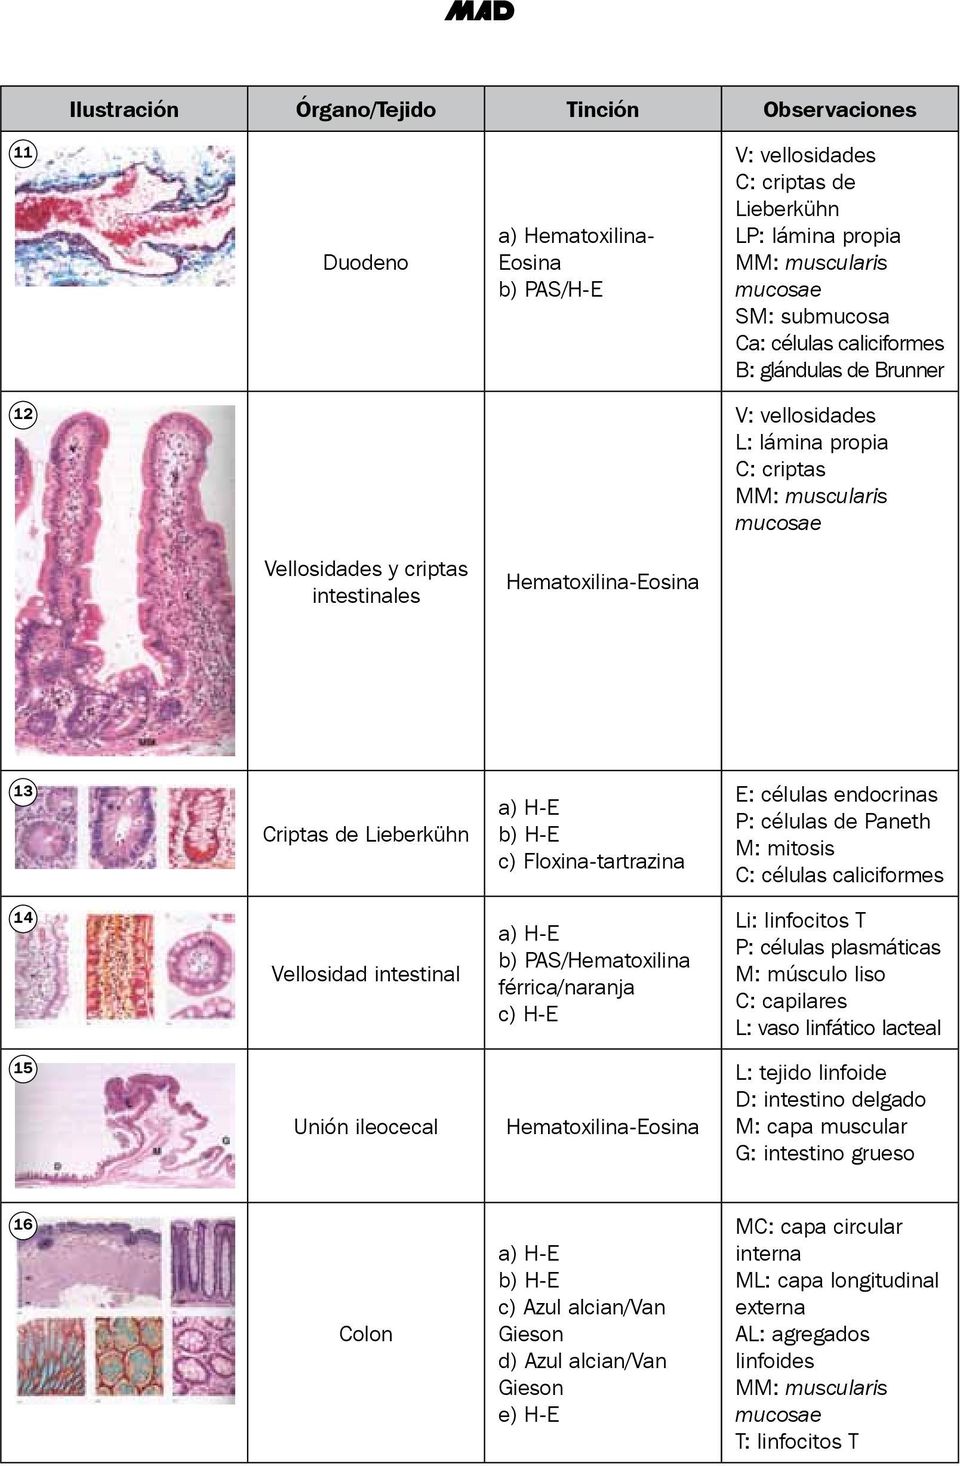 Paneth M: mitosis C: células caliciformes 14 Vellosidad intestinal a) H-E b) PAS/Hematoxilina férrica/naranja c) H-E Li: linfocitos T P: células plasmáticas M: músculo liso C: capilares L: vaso